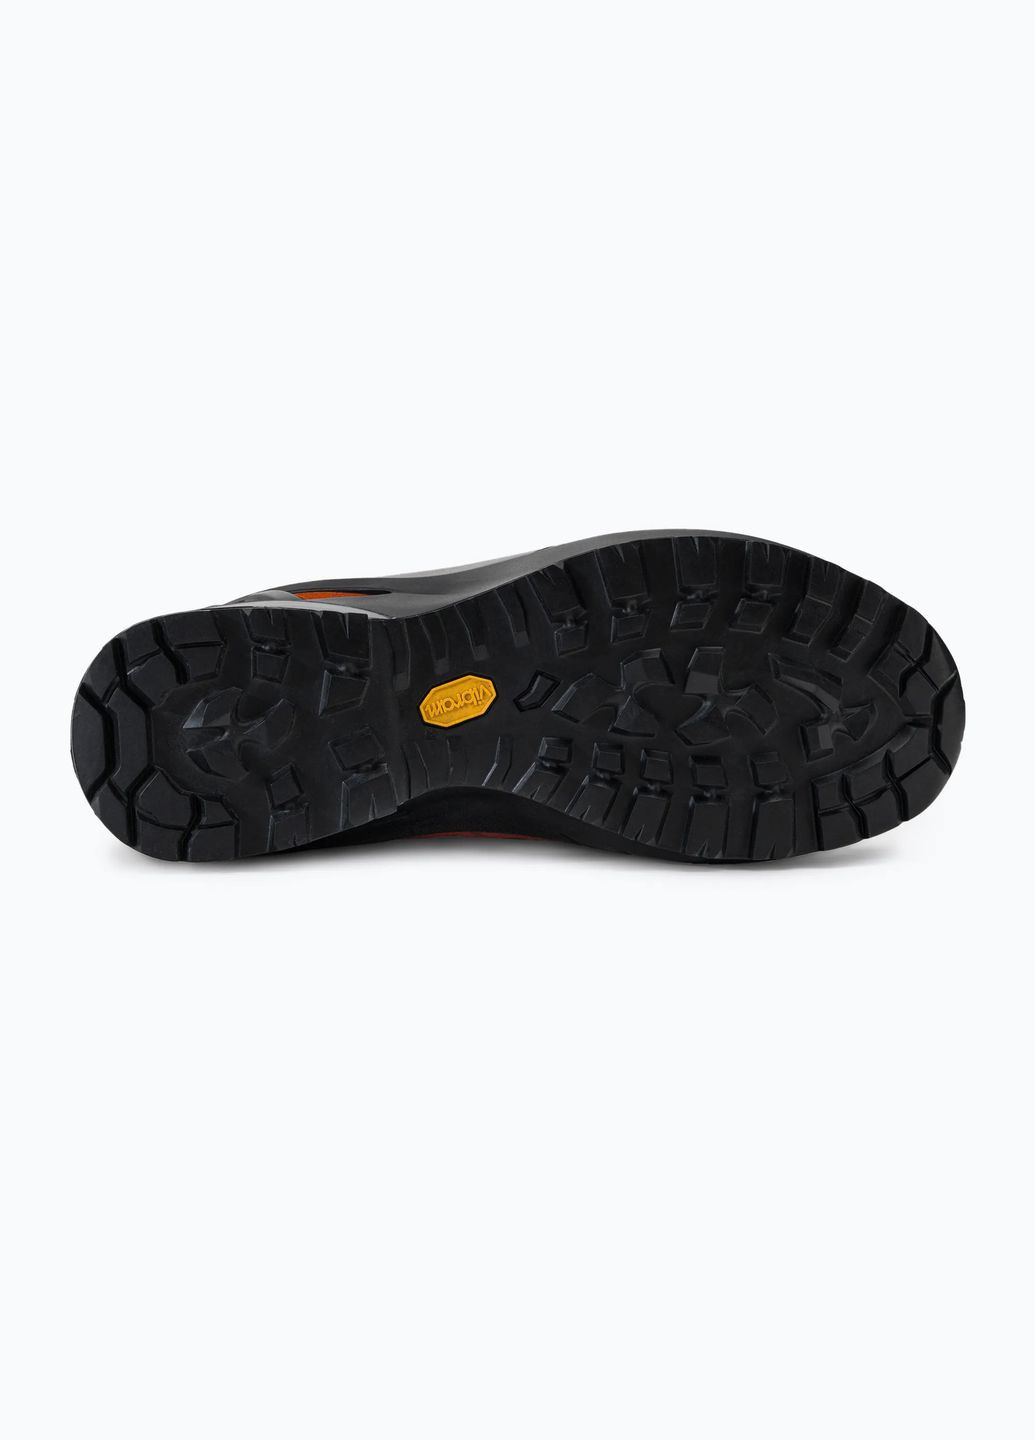 Цветные осенние ботинки cyclone-s gtx серый-оранжевый Scarpa